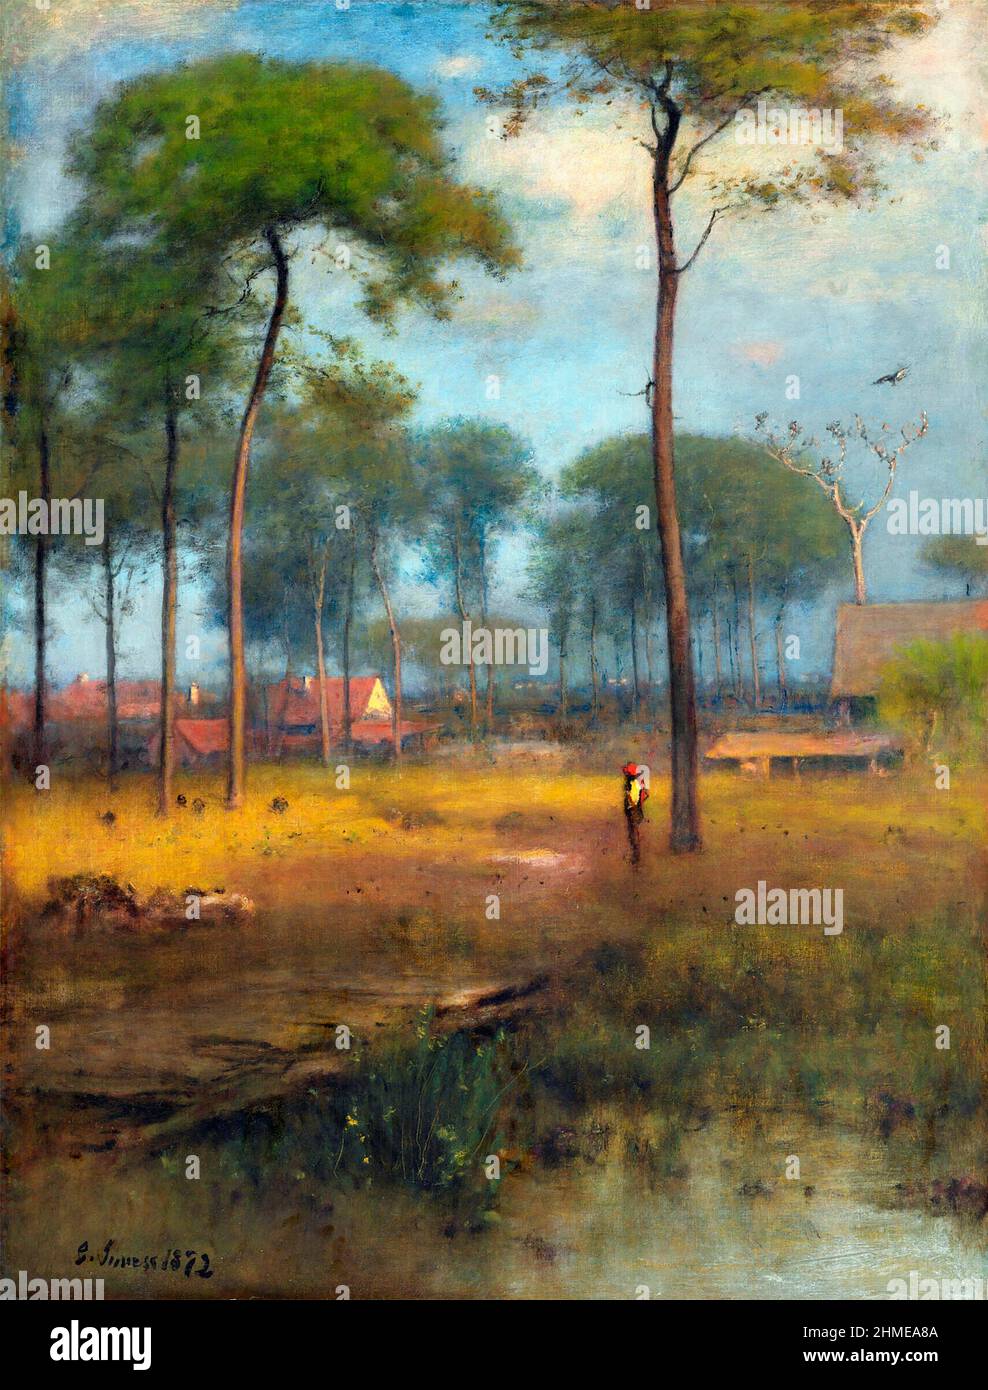 Early Morning, Tarpon Springs vom amerikanischen Landschaftskünstler George Inness (1825-1894), Öl auf Leinwand, 1893 Stockfoto